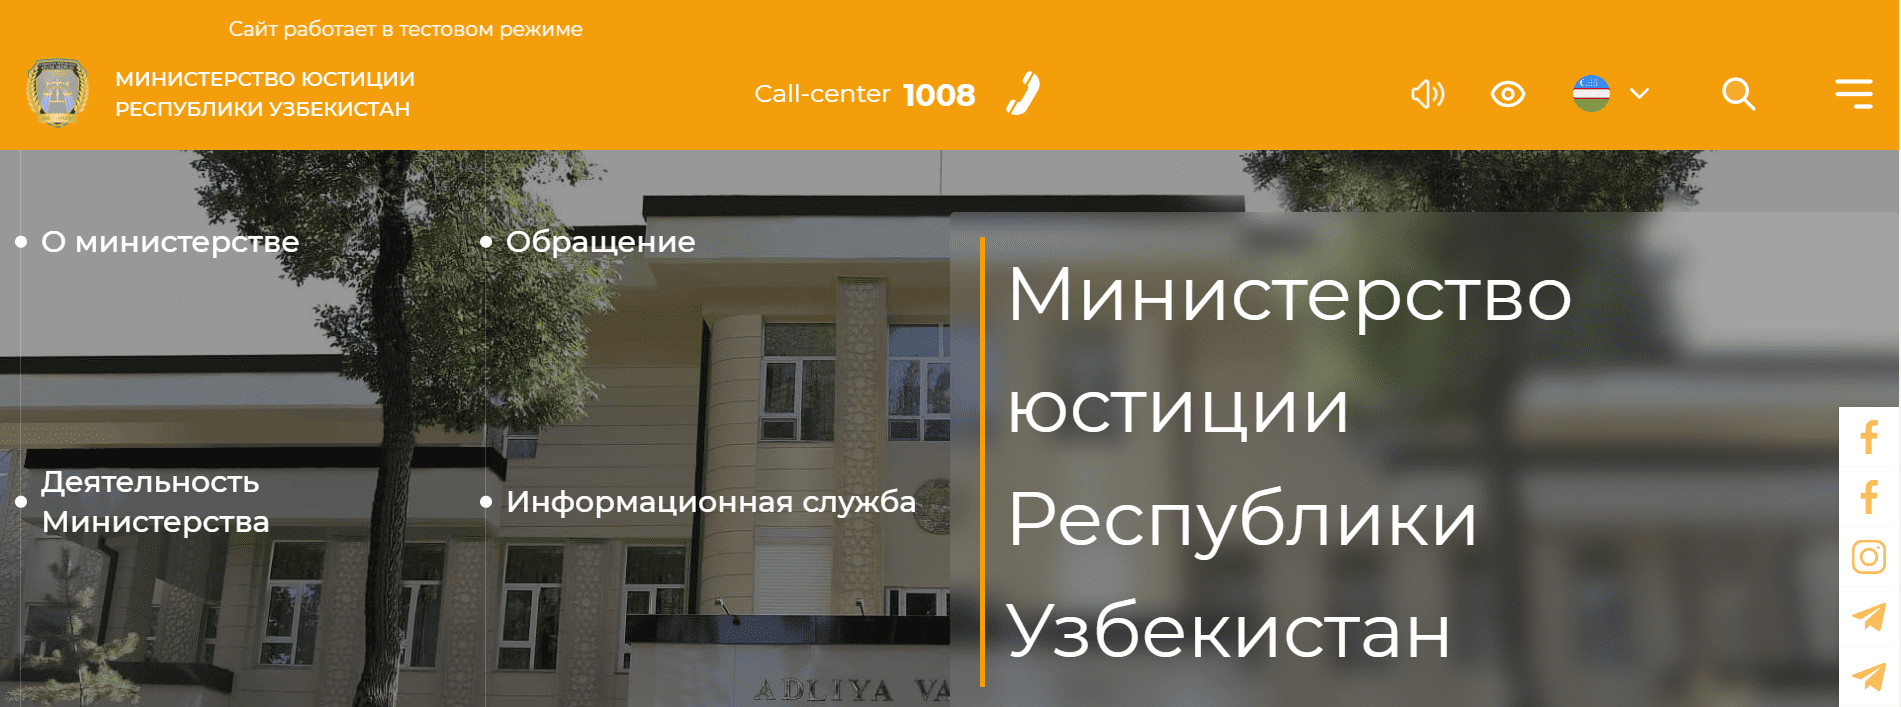 Министерство юстиции Республики Узбекистан (adliya.uz) - официальный сайт